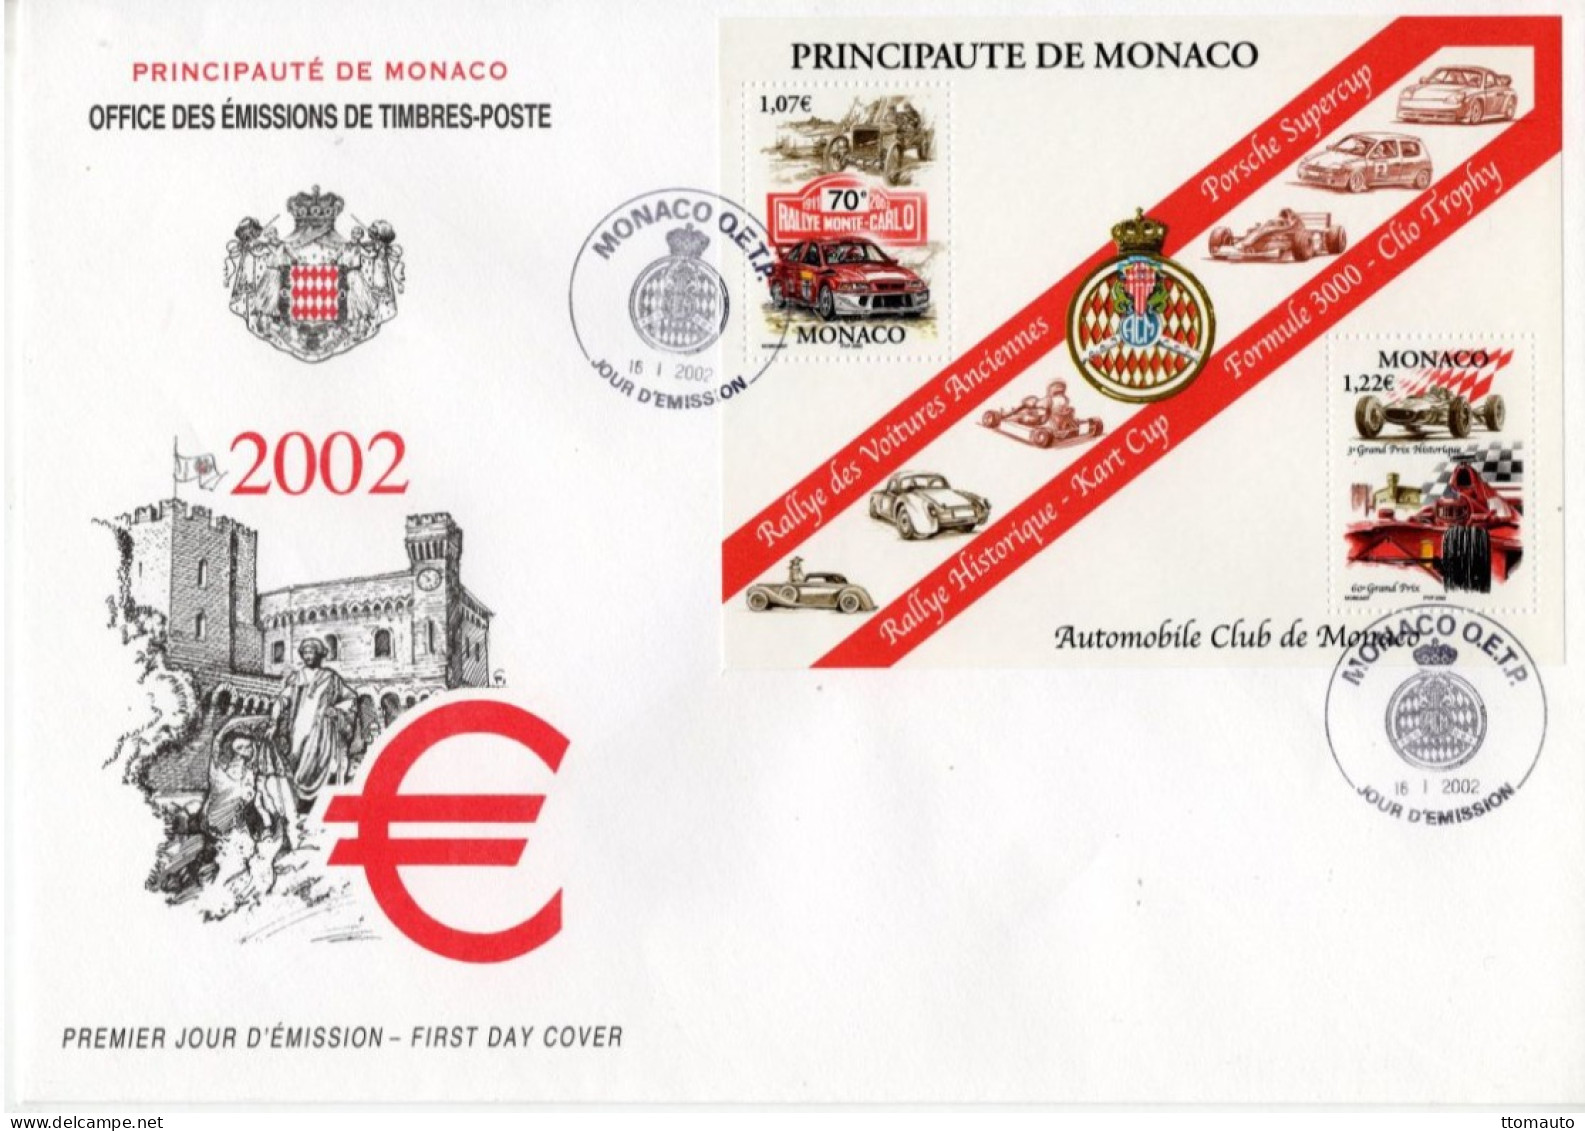 Automobile Club De Monaco - Rallye-Porsche-Kart-Clio-F3000 - Monaco 2v MS Envelope FDC - Prémier Jour D'Emission - Cars